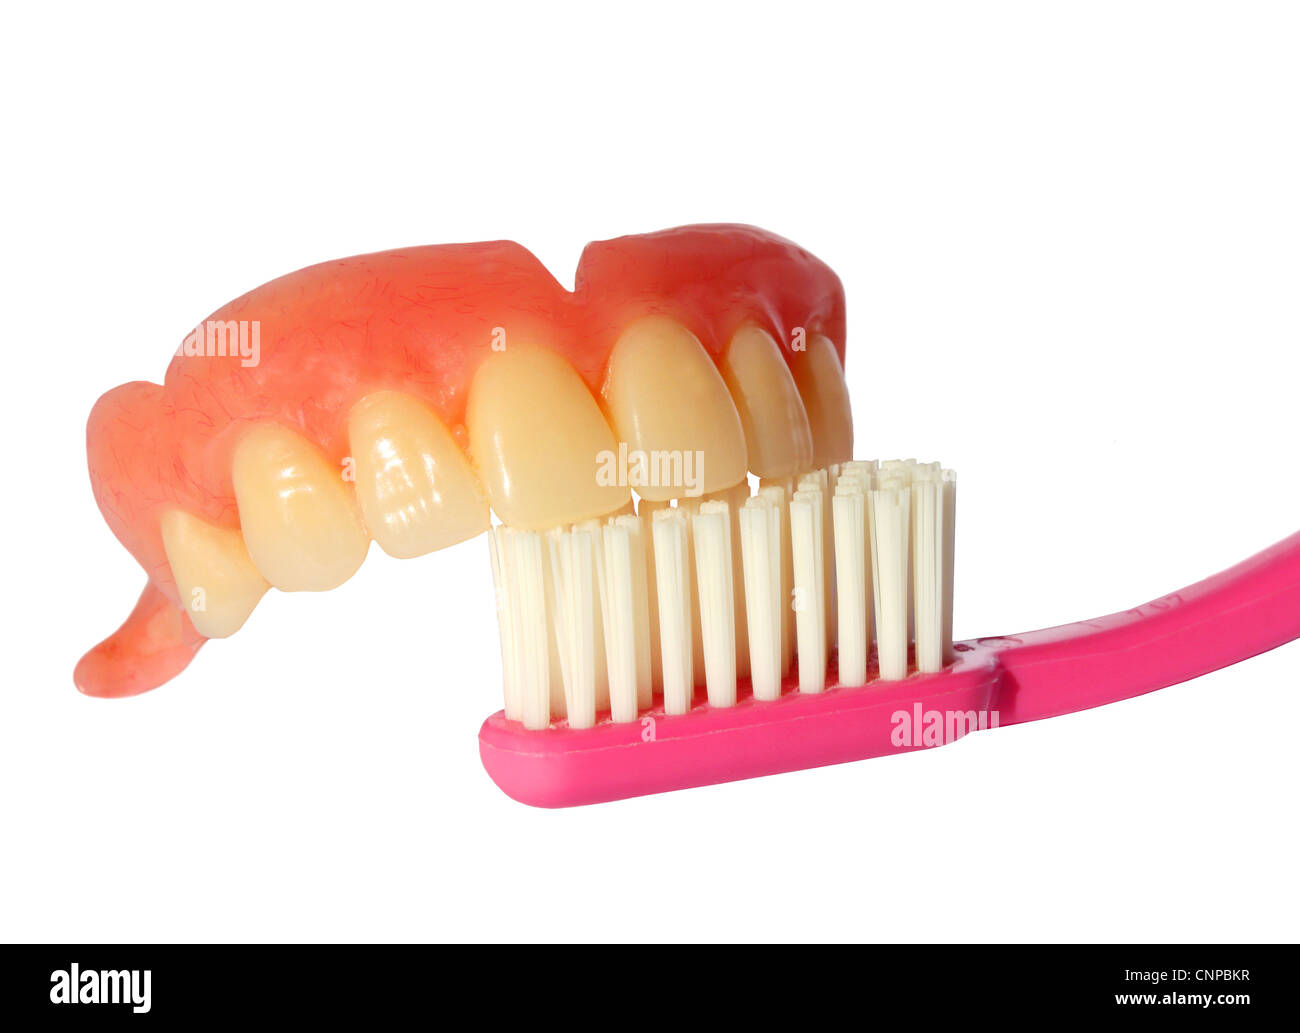 Eine komplette obere falsche Zähne oben auf einem rosa Zahnbürste. Stockfoto